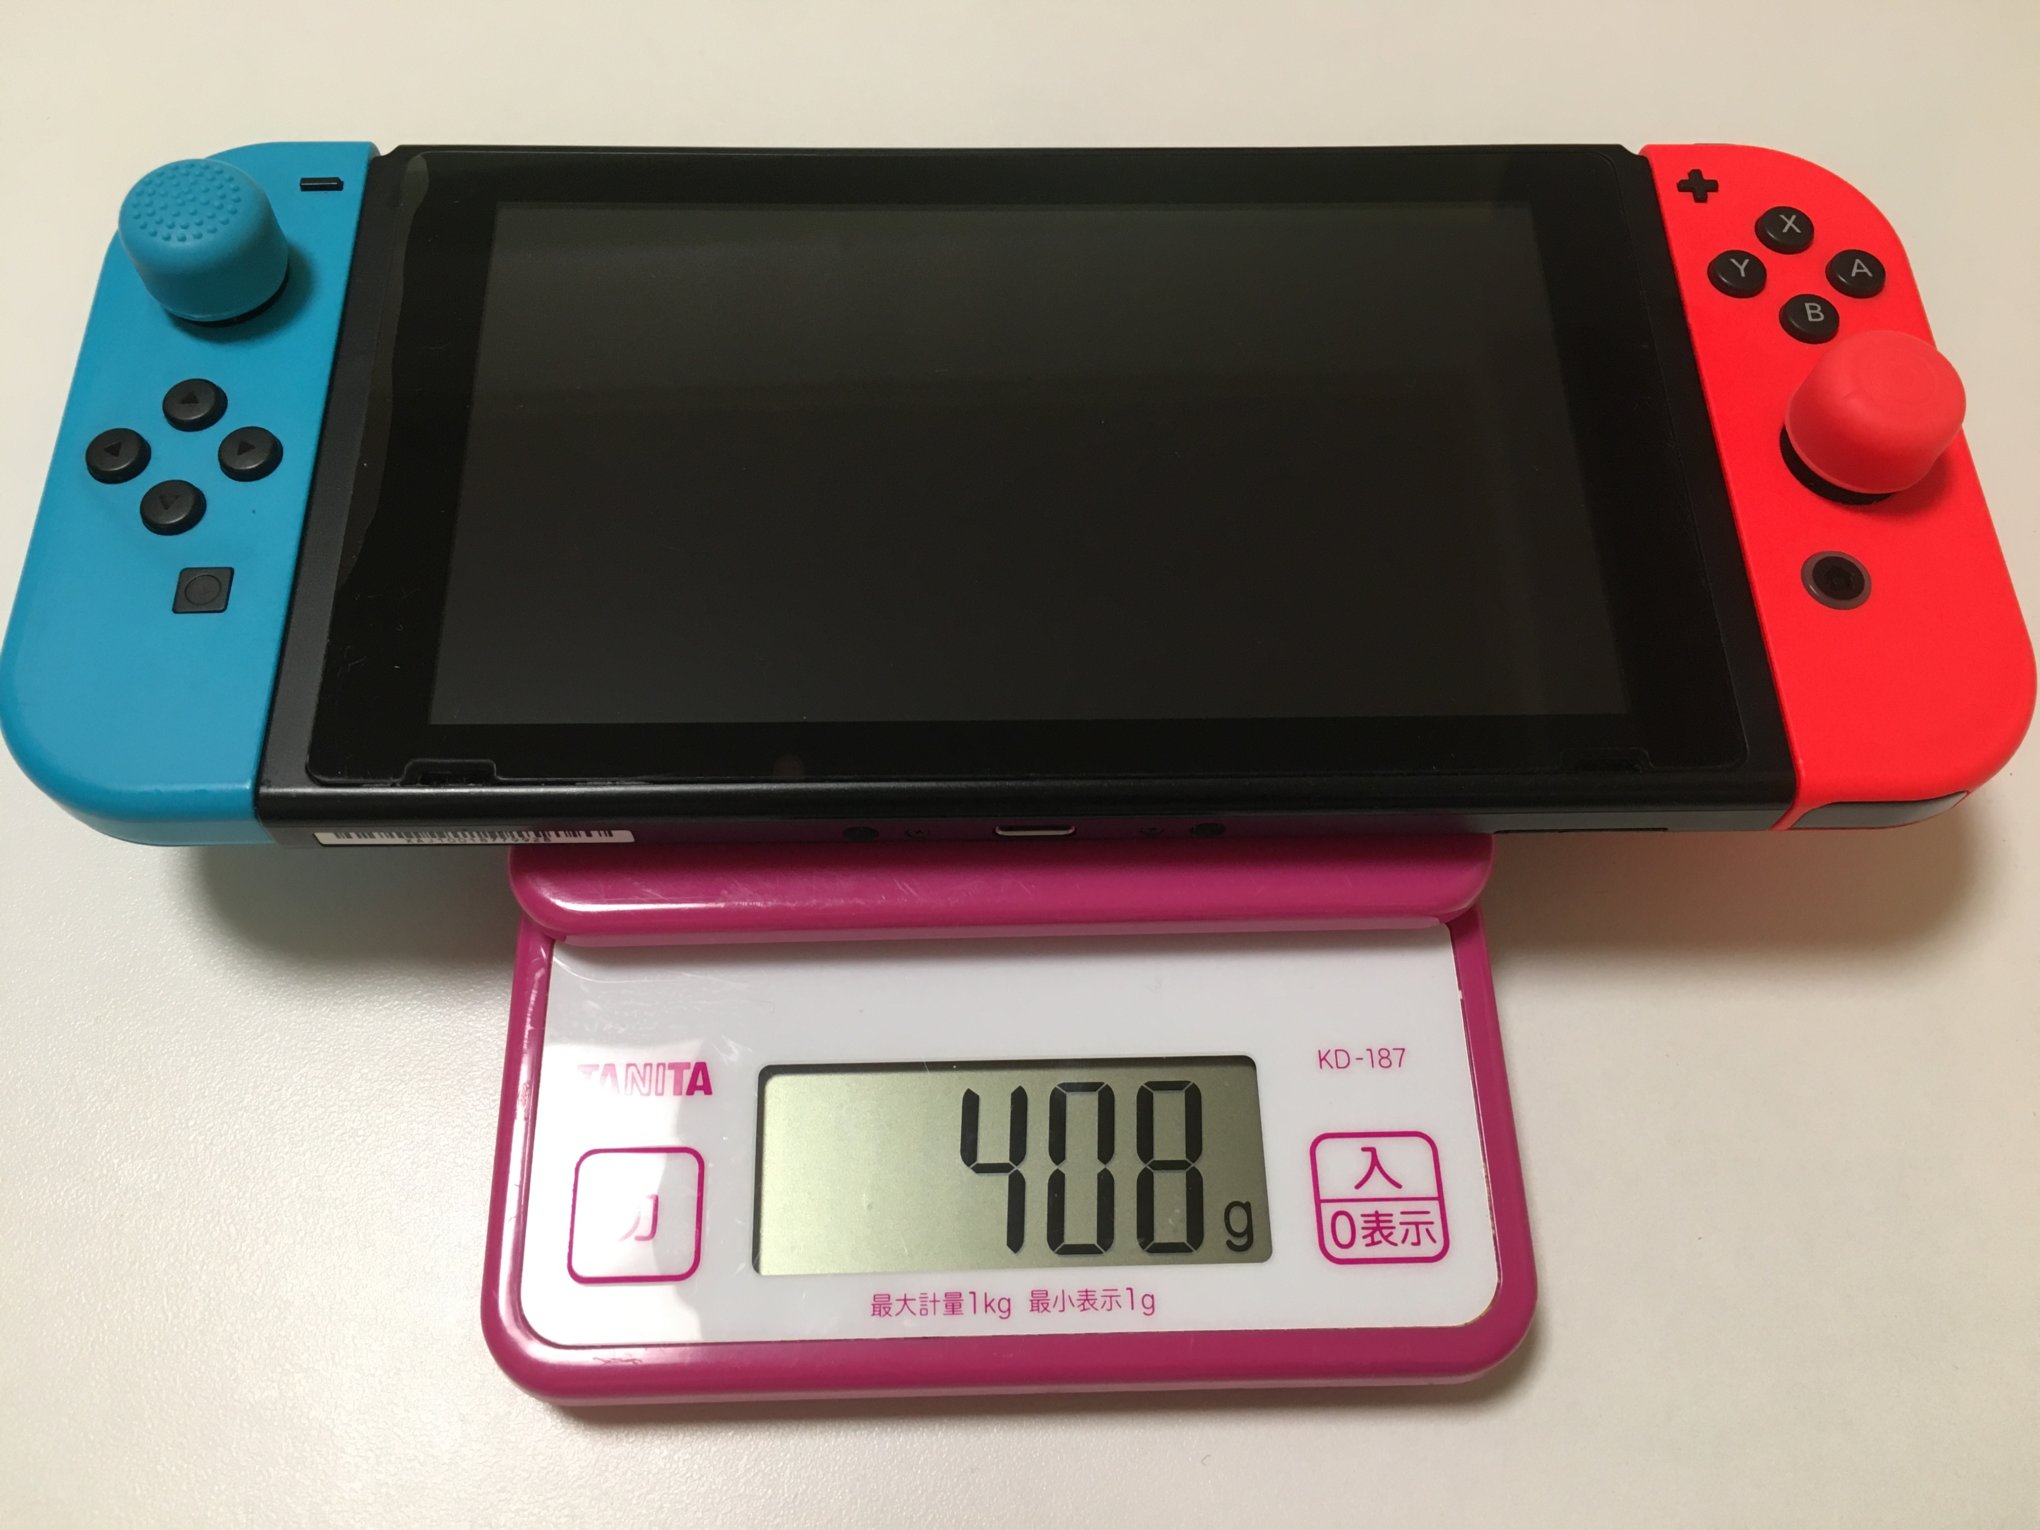 割引クーポン有  コーラルピンク LIite Switch Nintendo 携帯用ゲーム本体